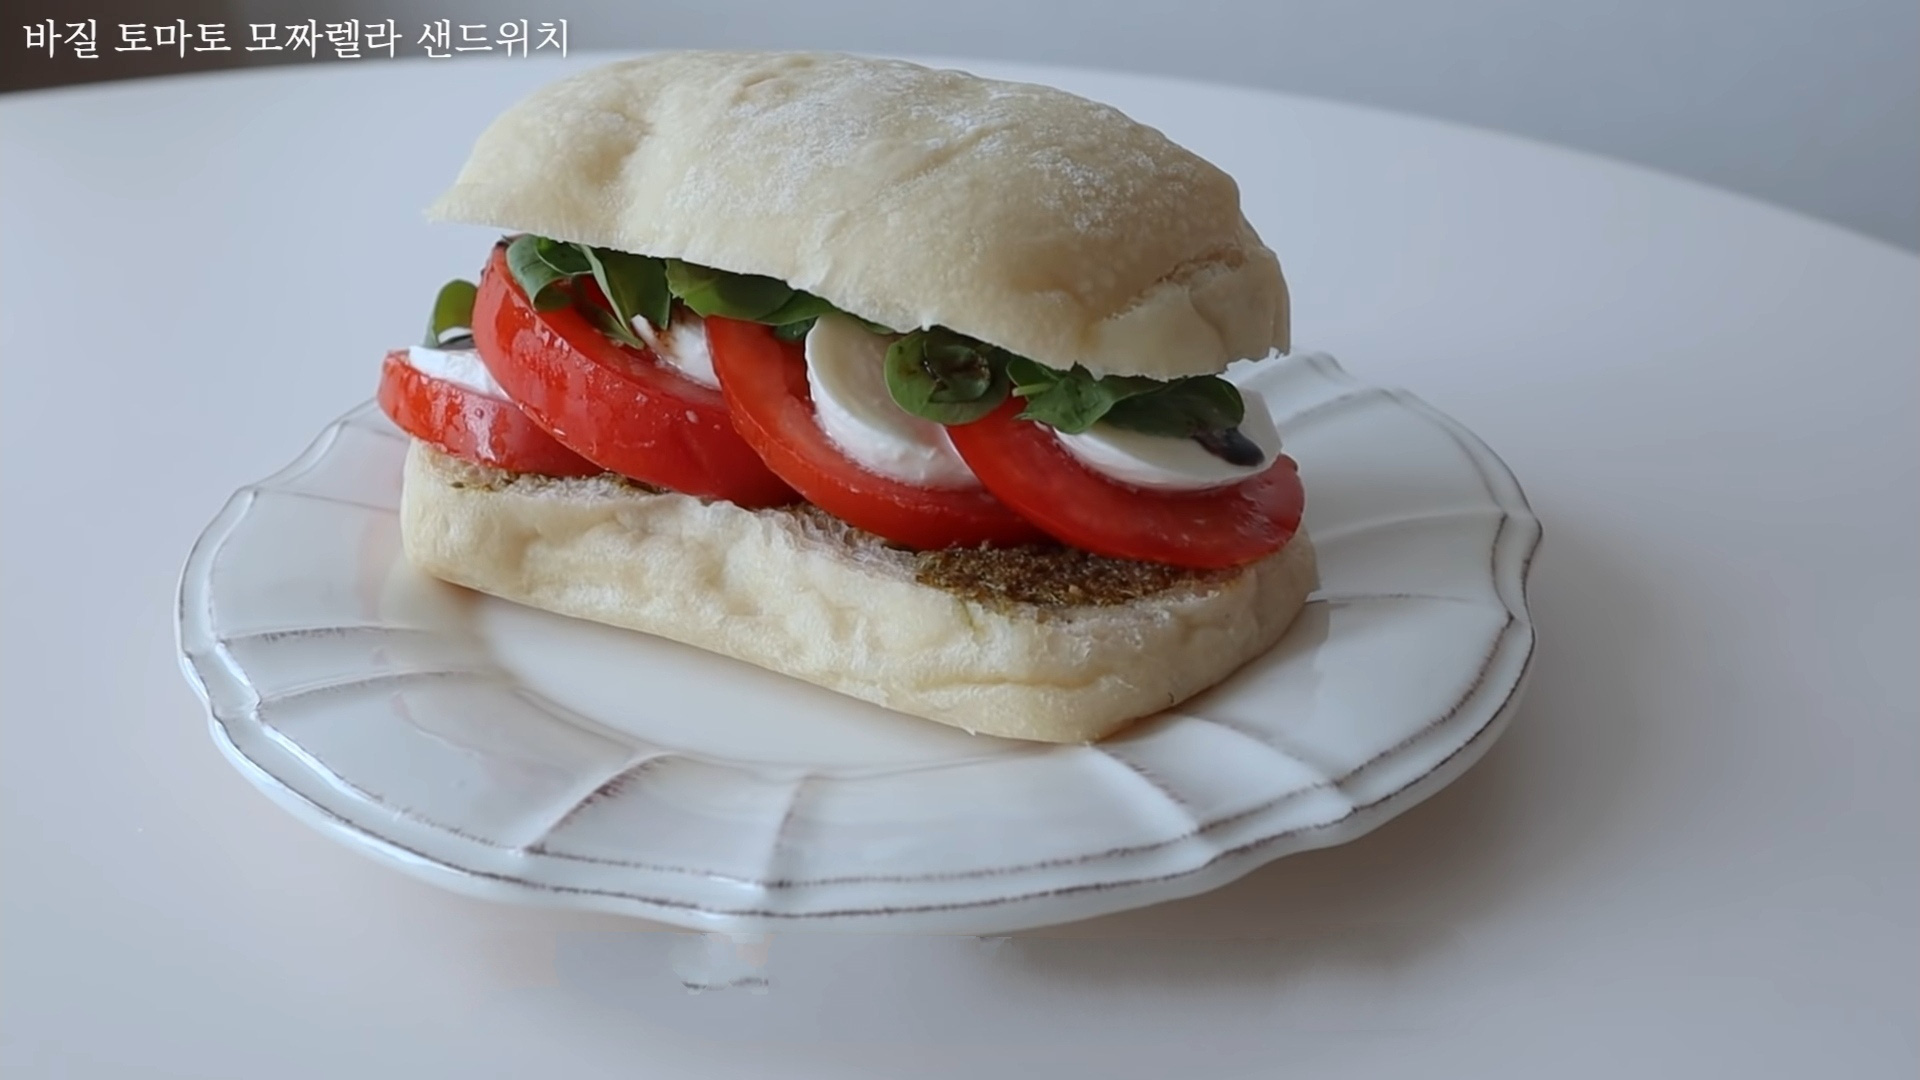 Vlogger Hàn chia sẻ bí quyết giảm 10kg nhờ tự tay làm những chiếc sandwich theo công thức của riêng mình - Ảnh 5.